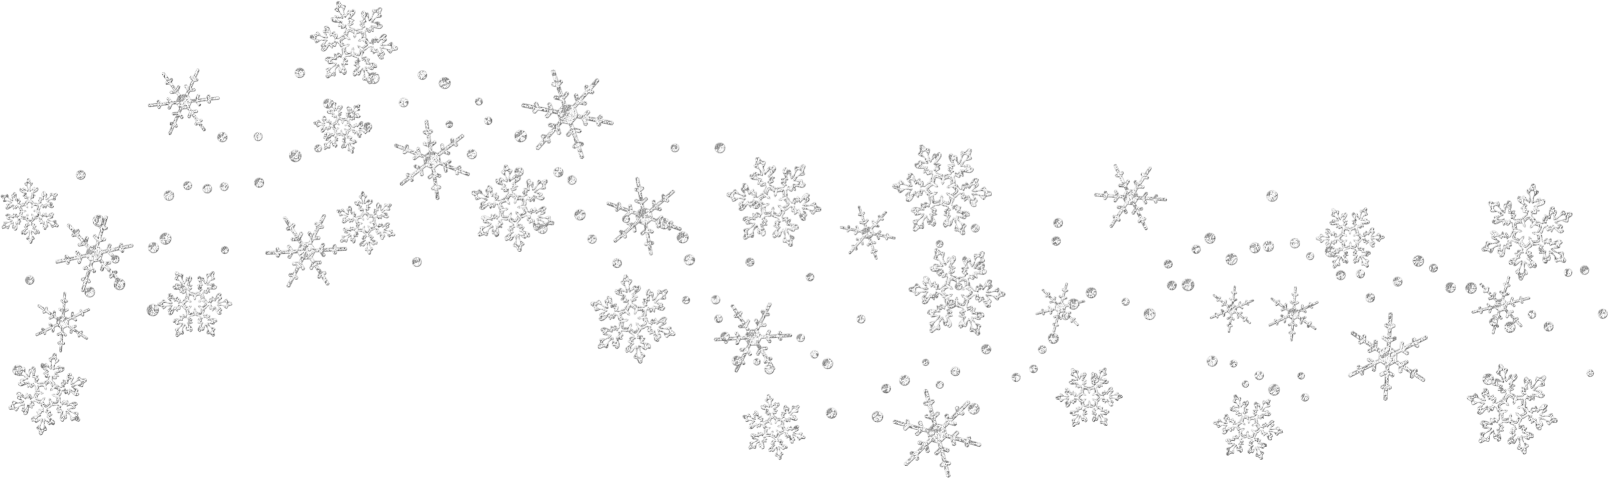 Snowflake Clipart Border Tumundografico White. 